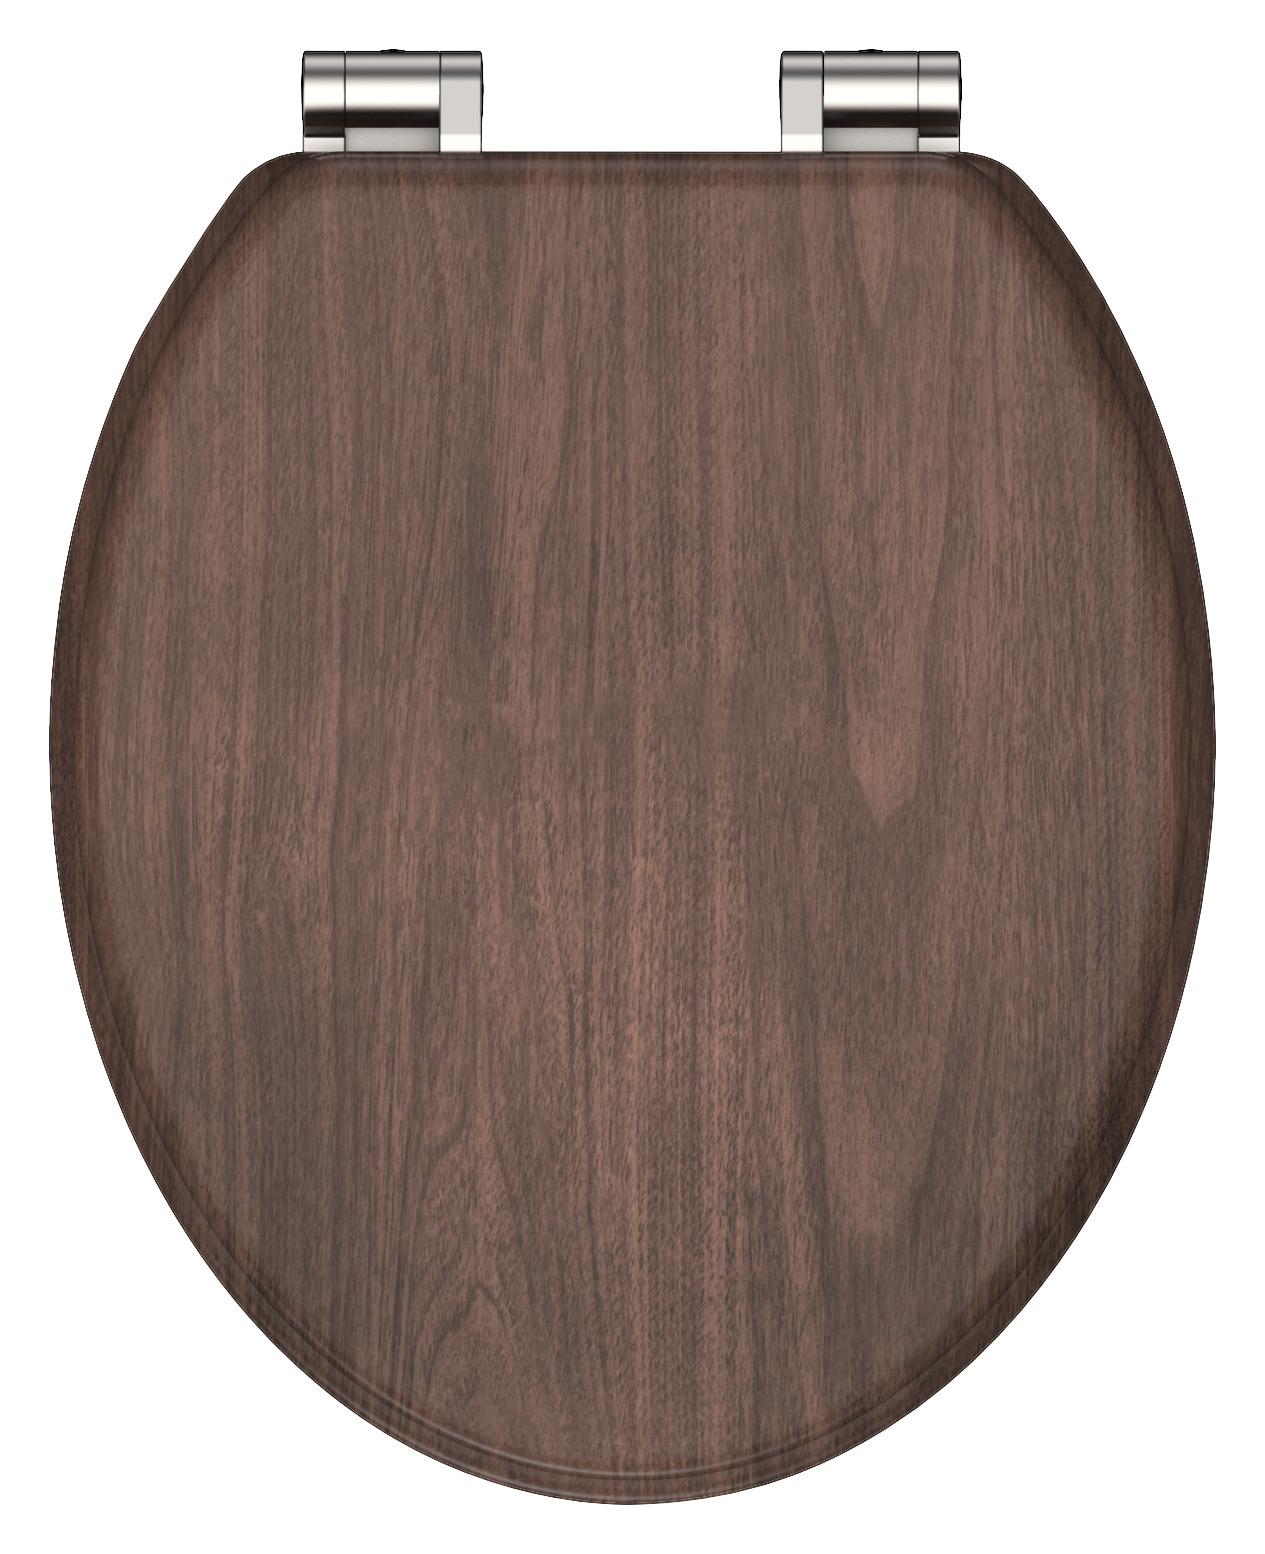 WC-Sitz Dark Wood mit Absenkautomatik - Dunkelbraun, Modern, Holzwerkstoff (37,5/2,2/43,5cm) - Modern Living